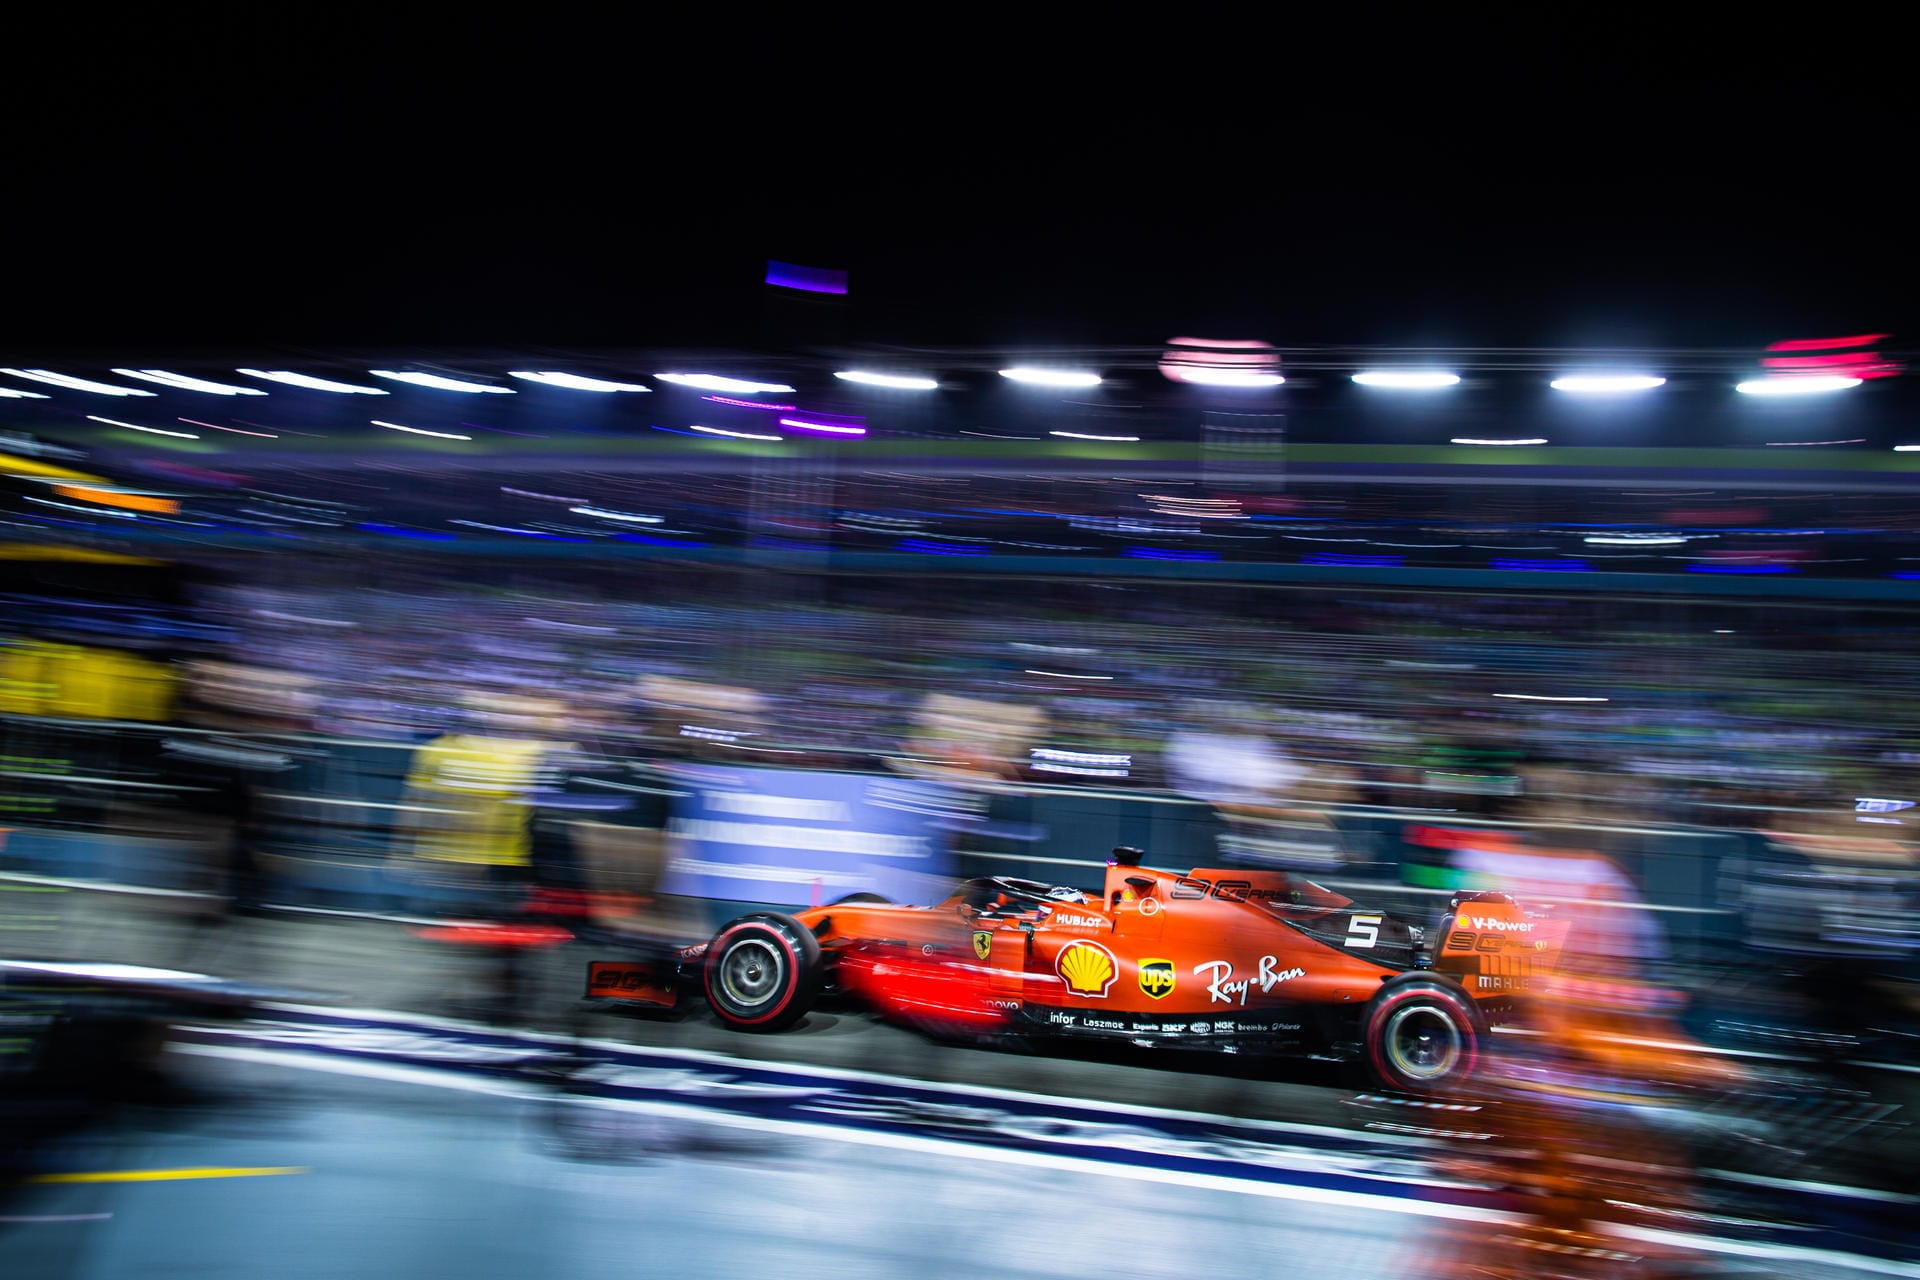 "Neue Zürcher Zeitung": "Der Triumph hätte kaum überraschender und dramatischer ausfallen können. Mit diesem Ergebnis wird sich die Beziehung zwischen Vettel und Leclerc noch weiter zuspitzen."